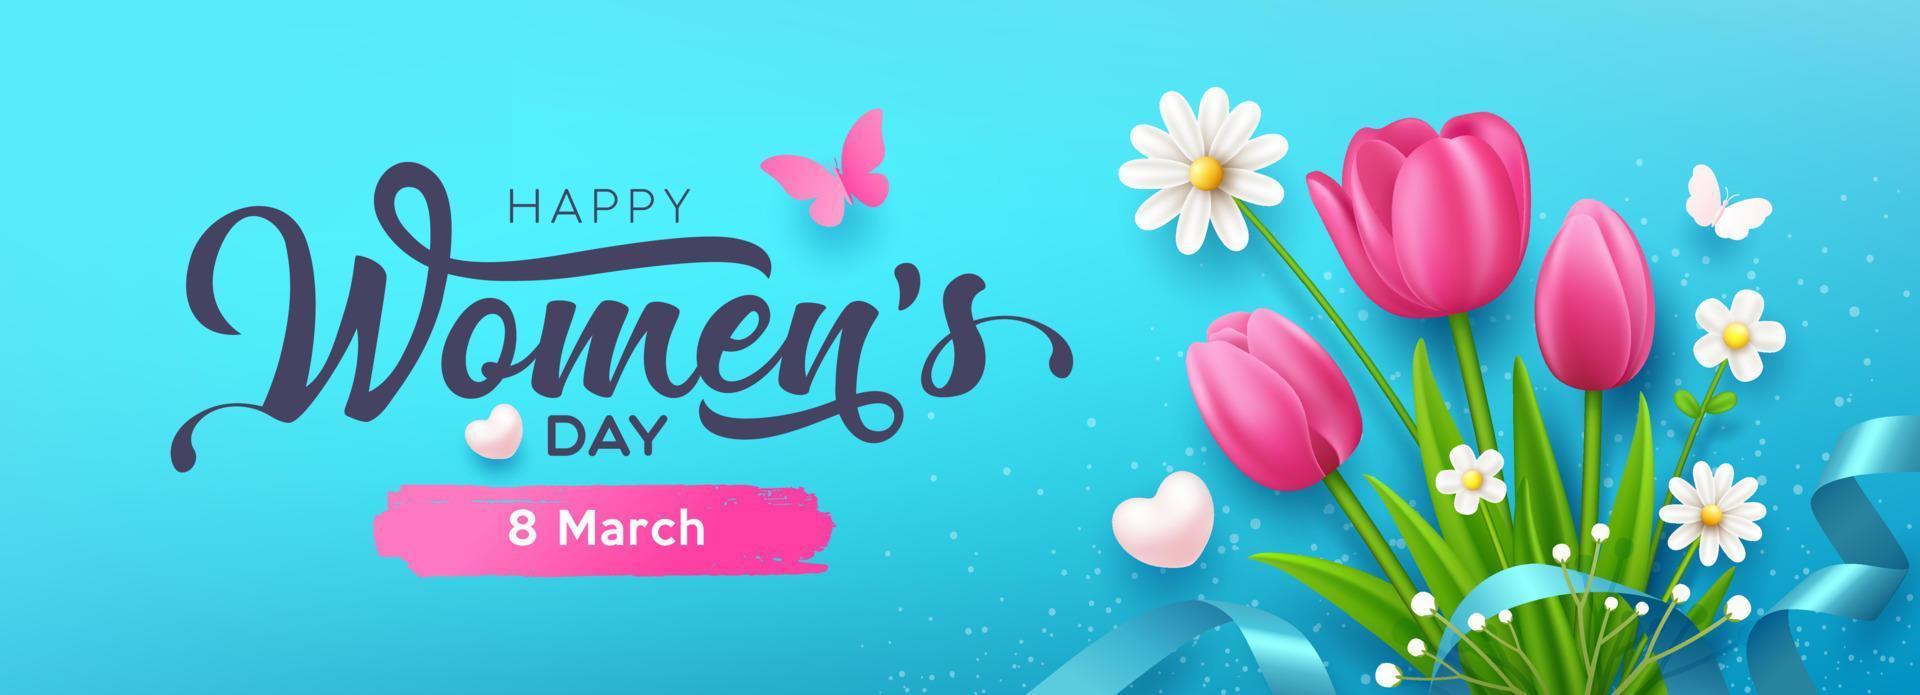 Da donna giorno Messaggio, tulipano fiori e farfalla con nastri bandiera design su blu sfondo, eps10 vettore illustrazione.